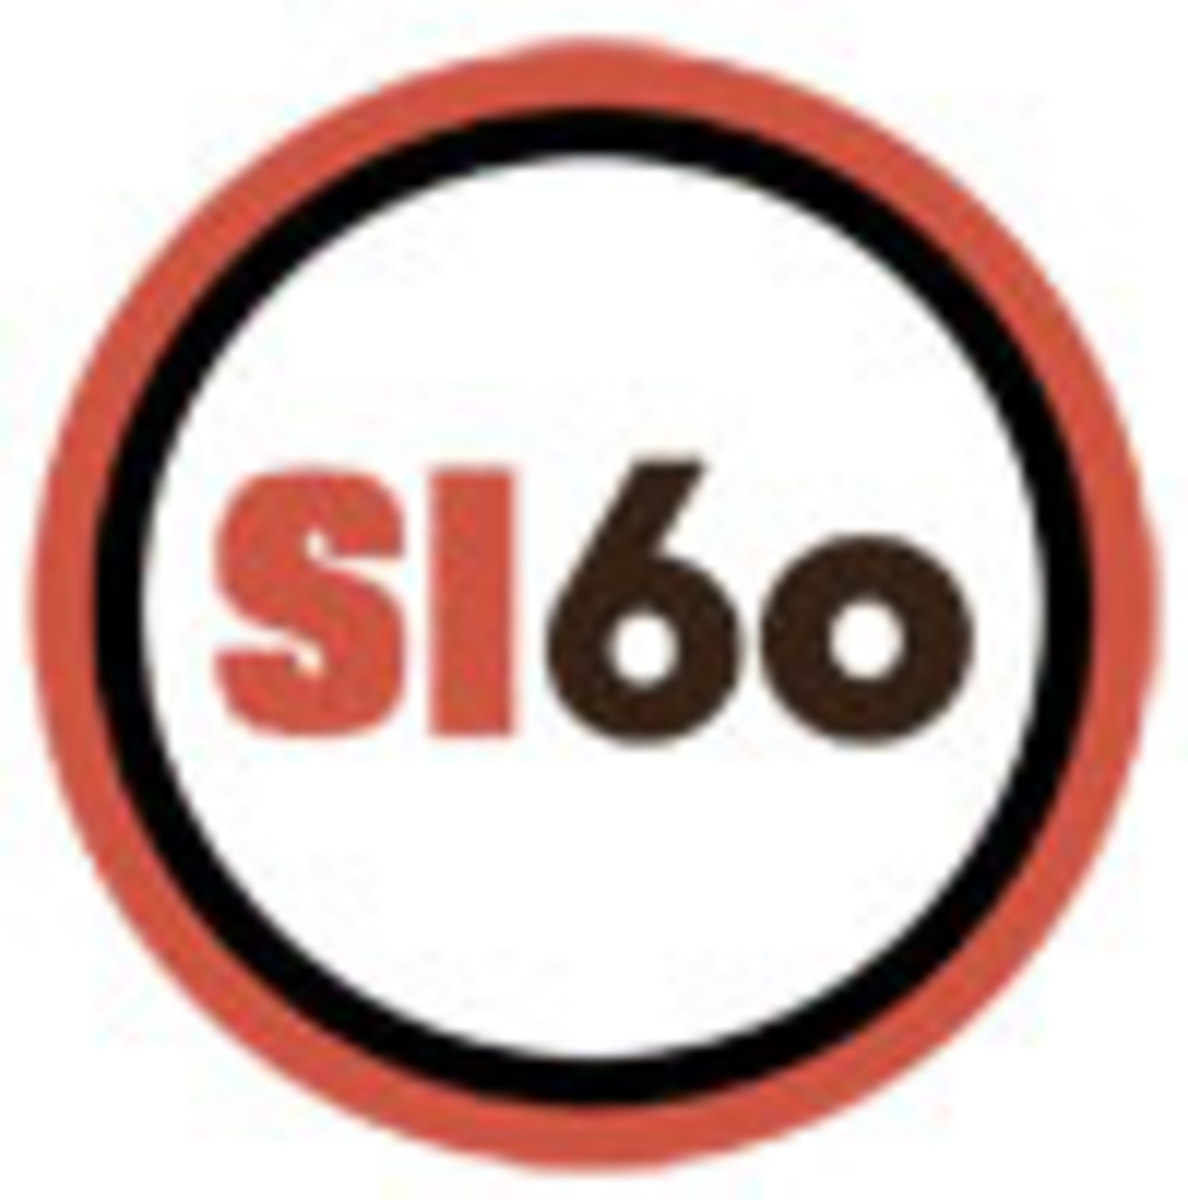 si60_circle_logo_small.jpg